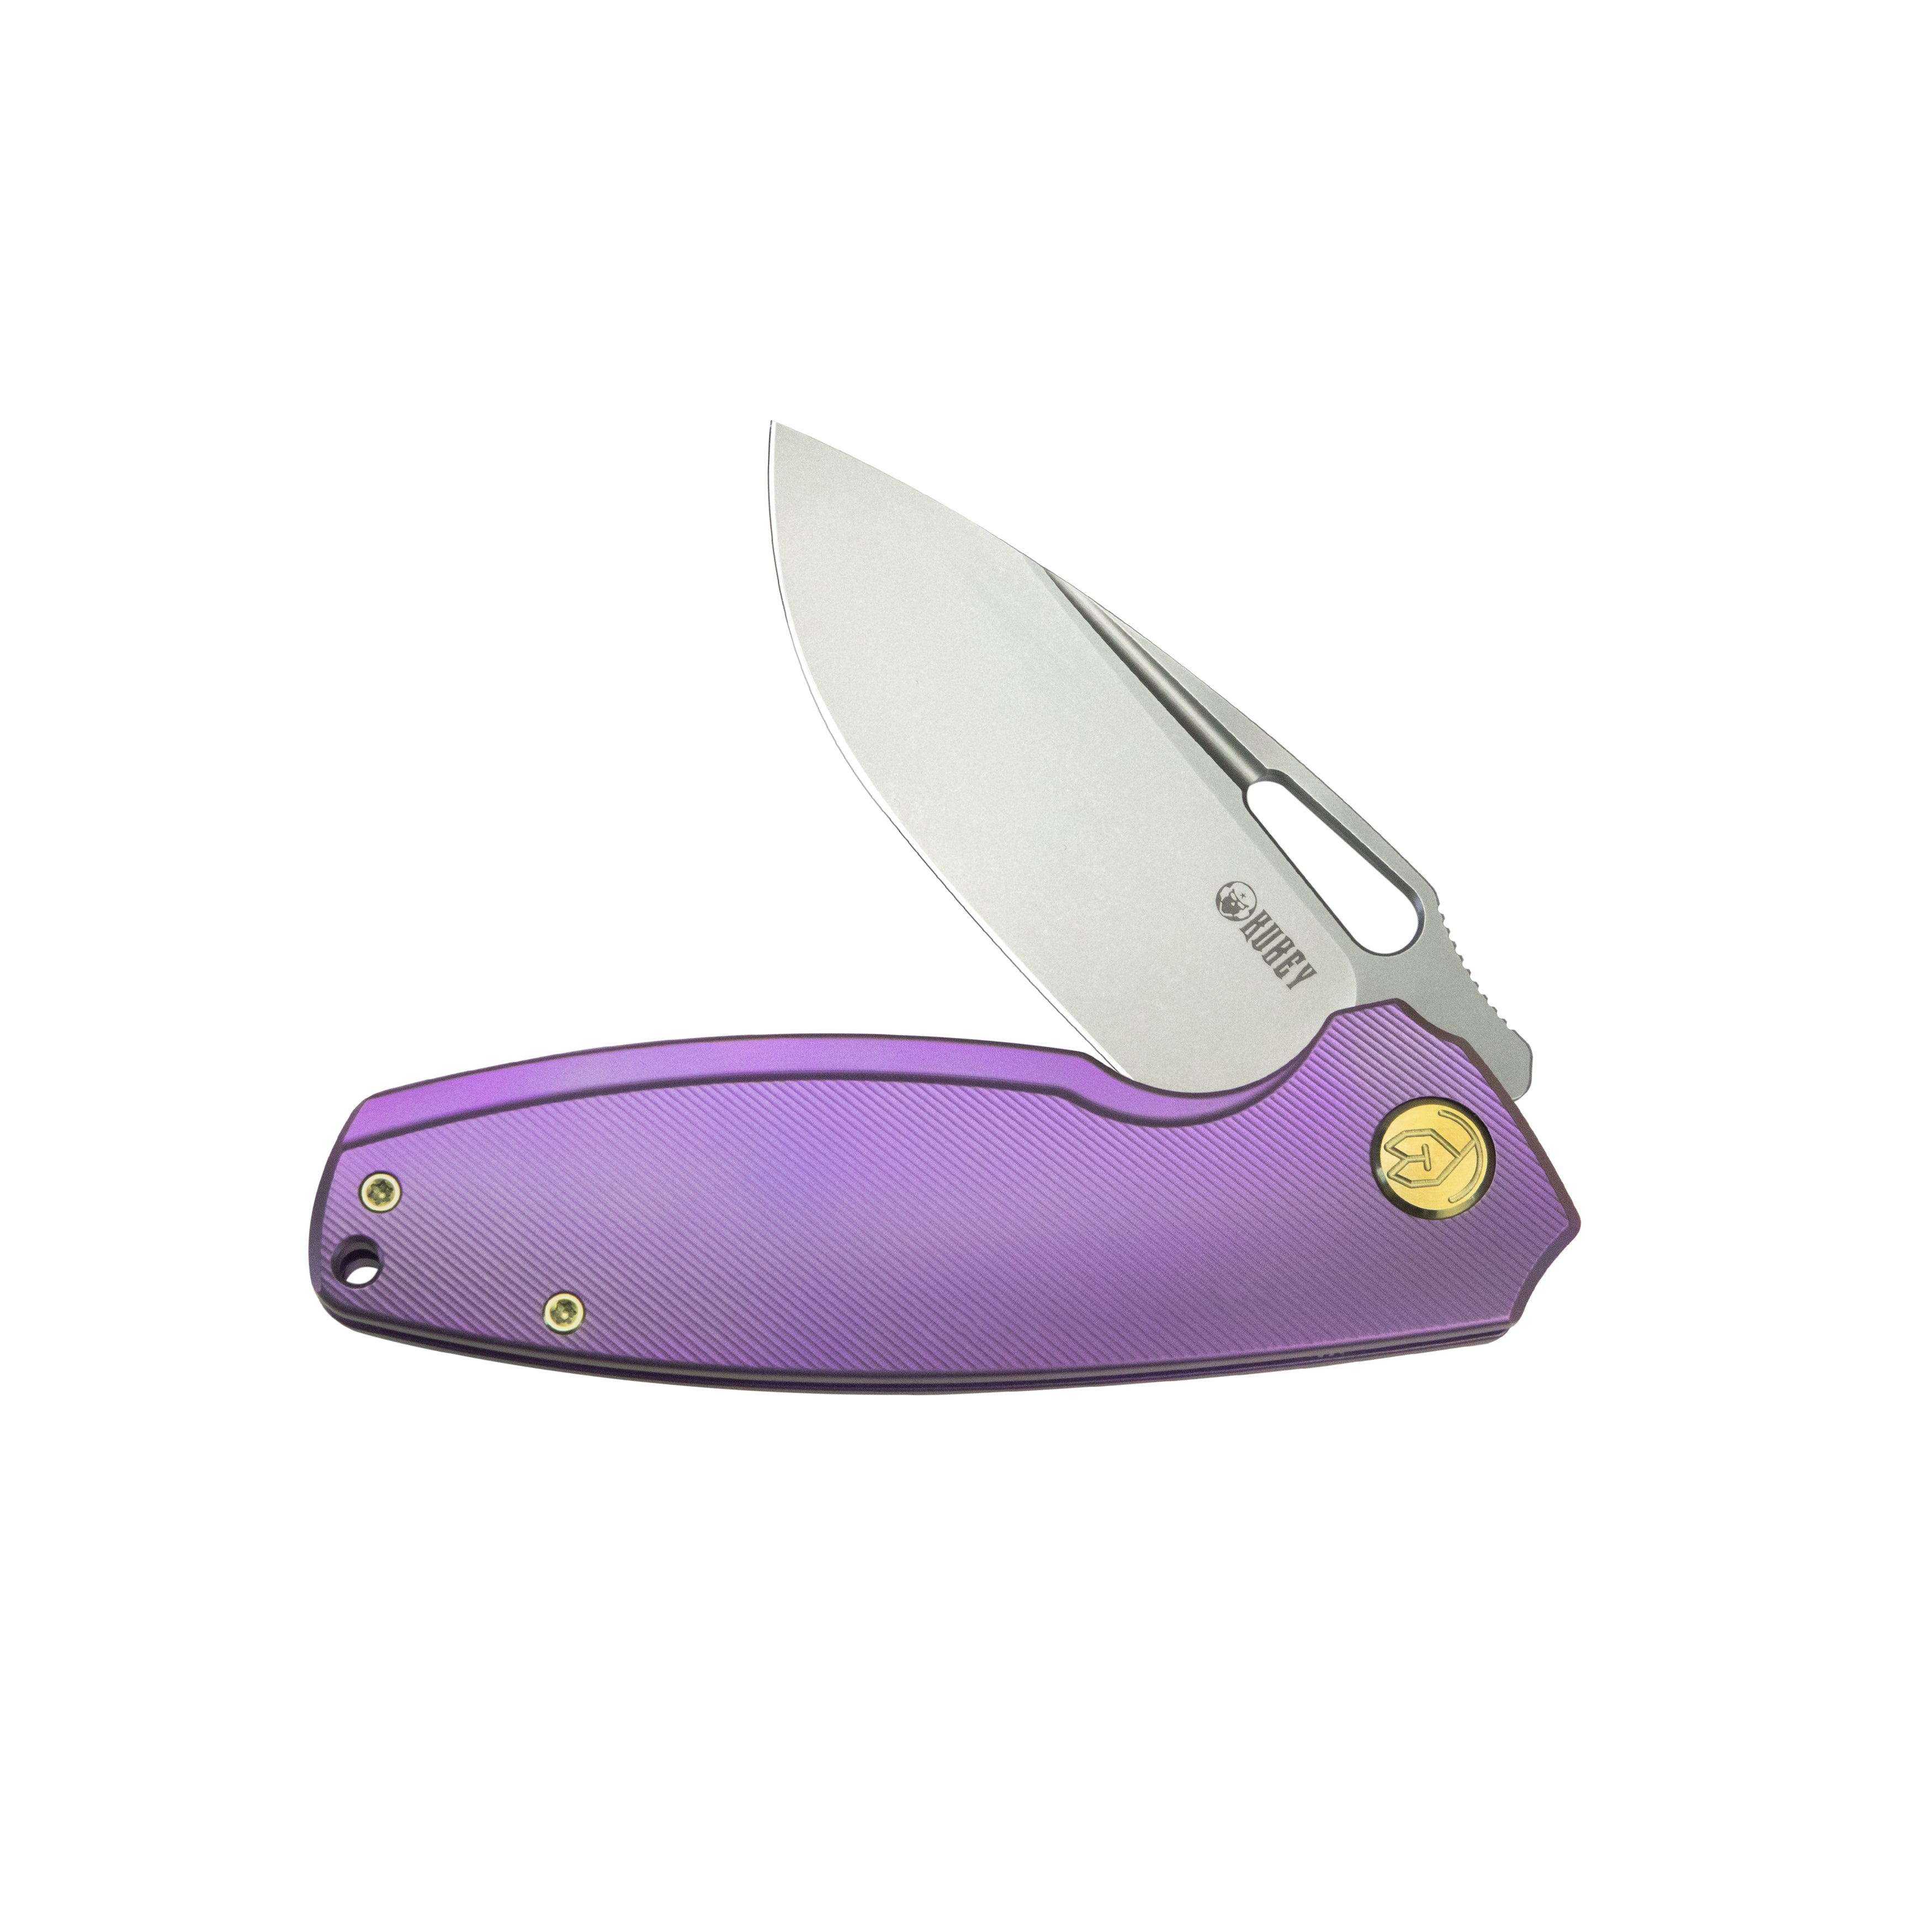 Kubey Tityus Frame Lock Flipper Folding Knife Purple 6AL4V Contoured Titanium Handle 3.39" Bead Blasted 14C28N KB360C